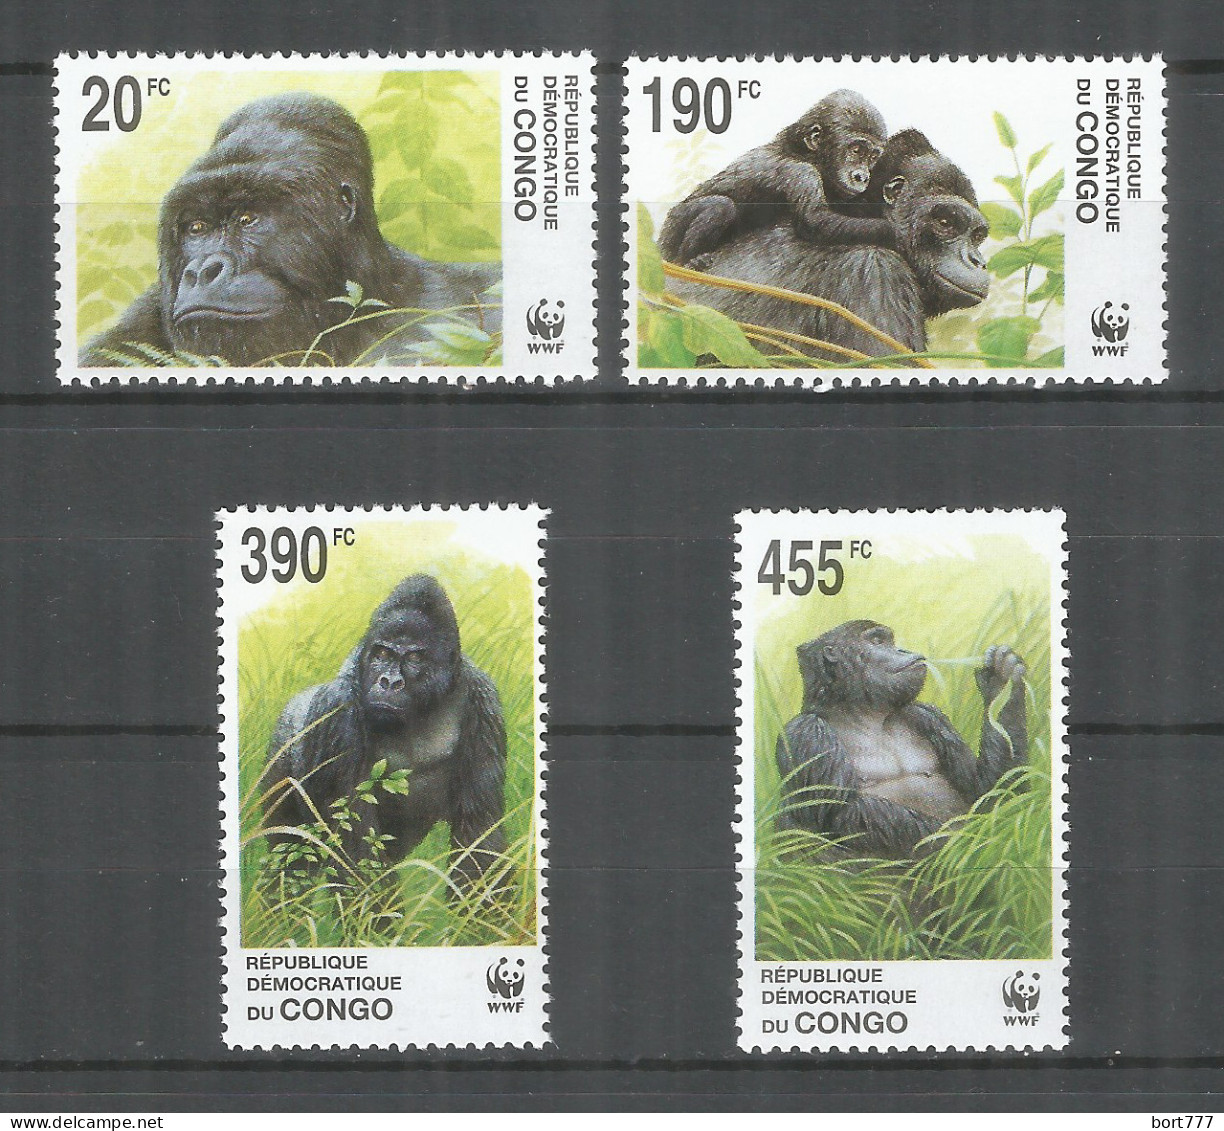 Congo 2002 Year Mint Stamps MNH(**) Monkey WWF - Nuovi